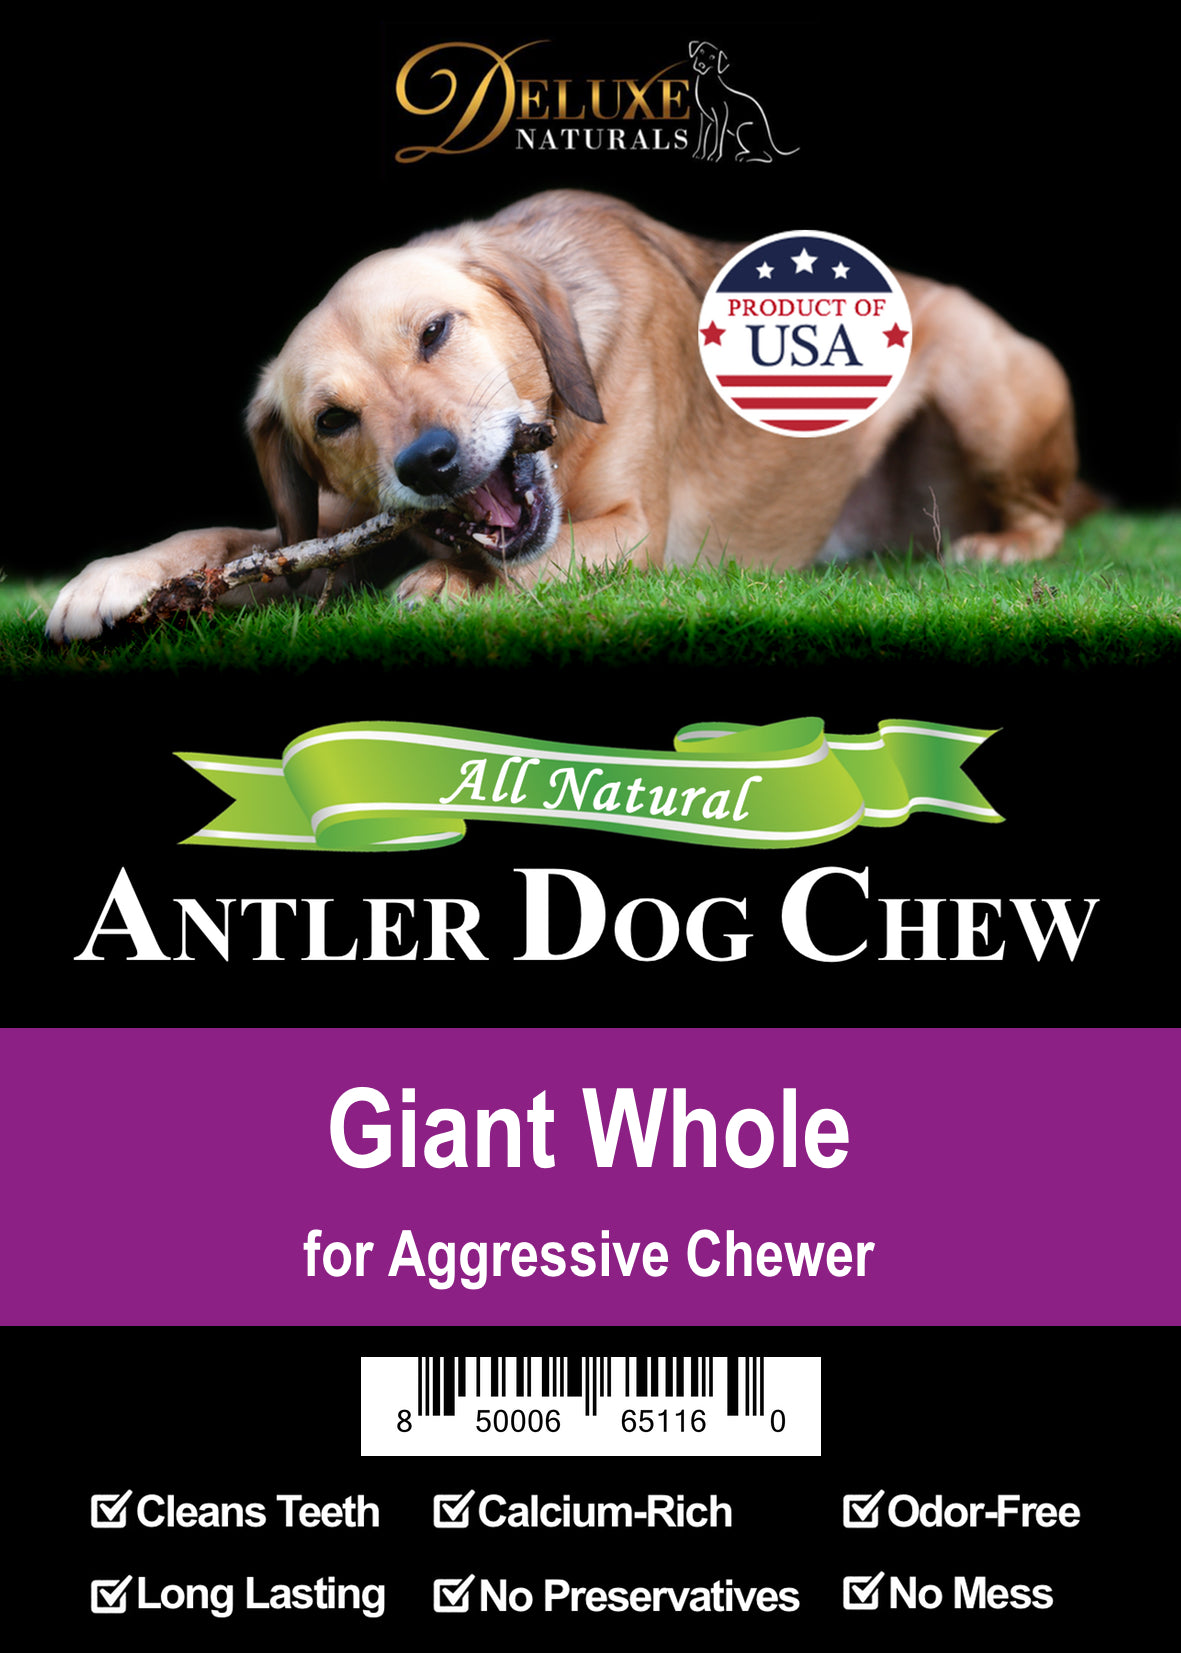 Deluxe Naturals Elk Antler Dog Chew - Giant Whole